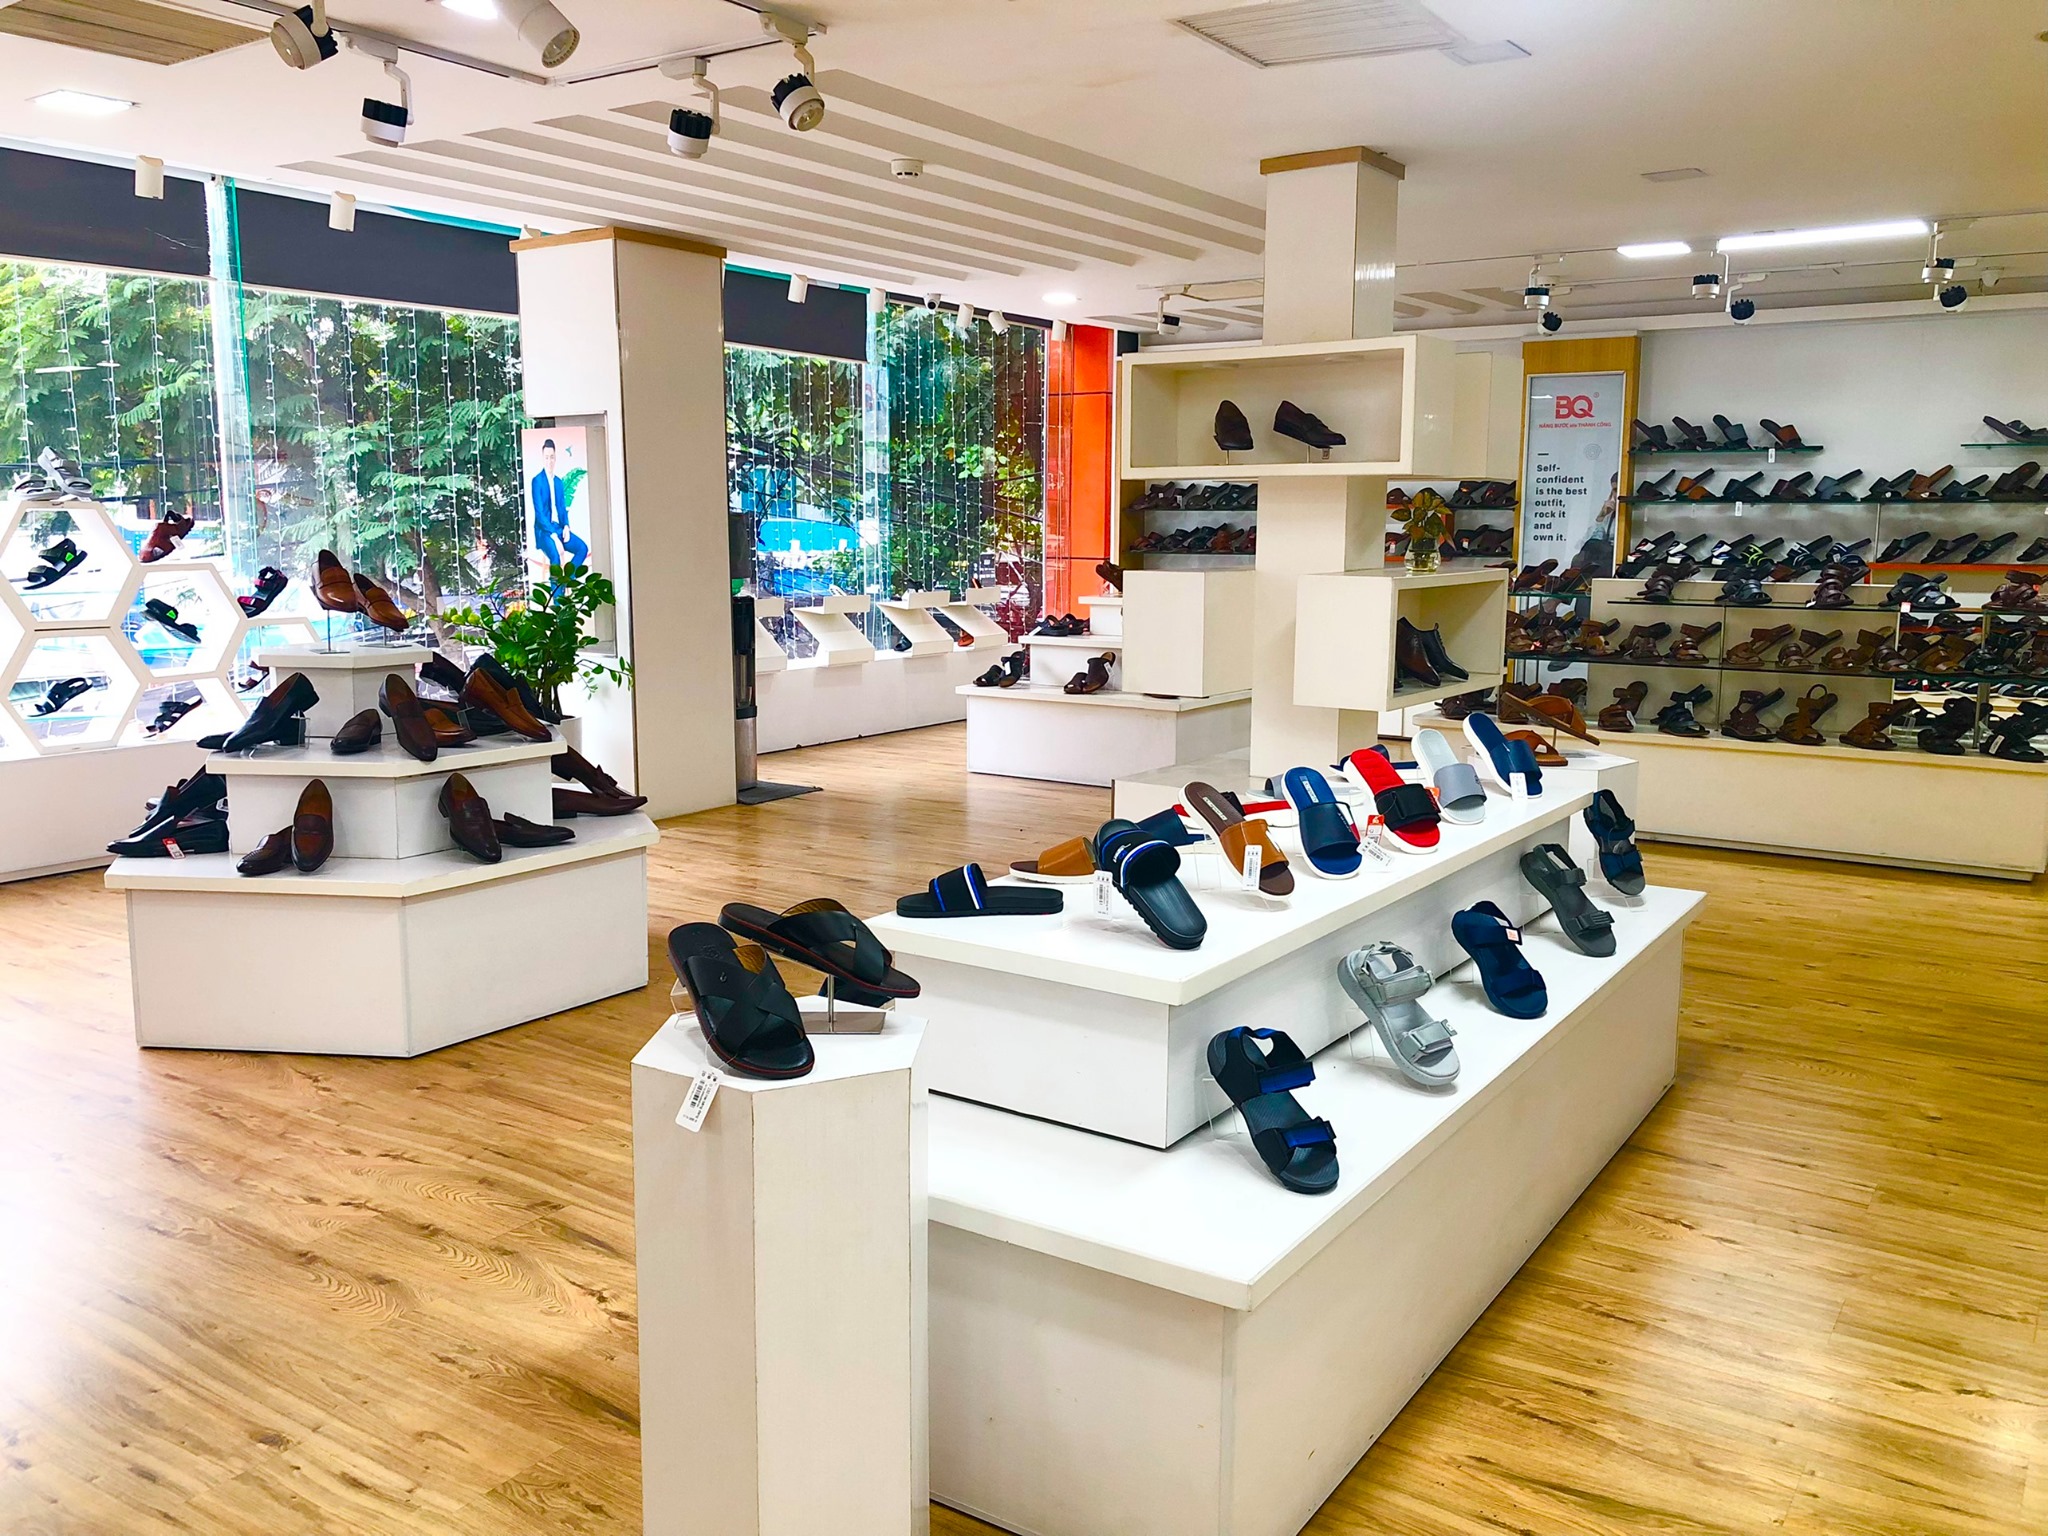 Top 8 cửa hàng giày nữ đẹp nhất ở Đà Nẵng -  BQ